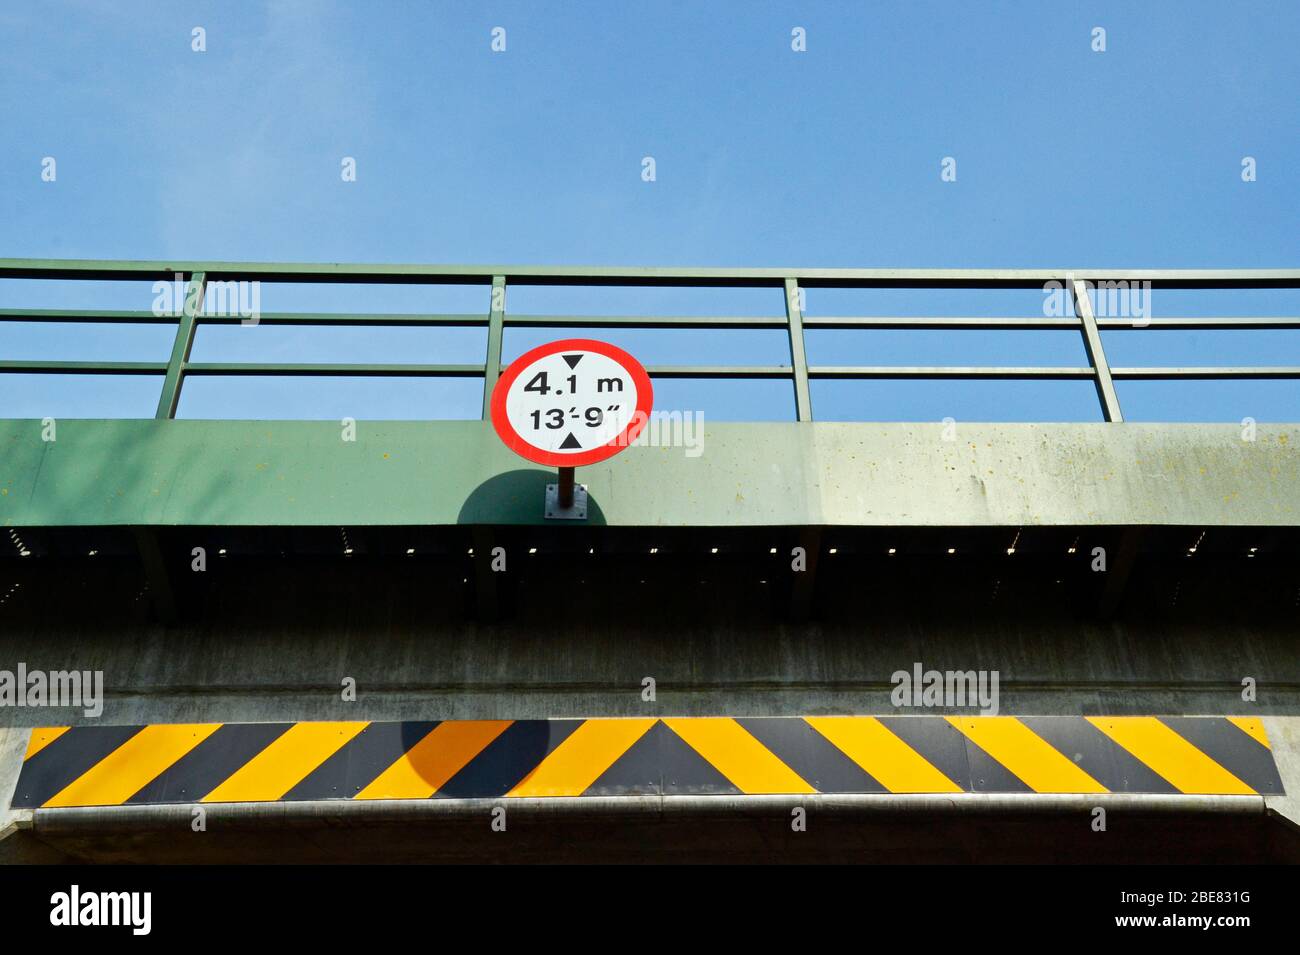 4.1m, 13' 9' señal de altura del puente, con franja de advertencia negra y amarilla en el túnel rural Foto de stock